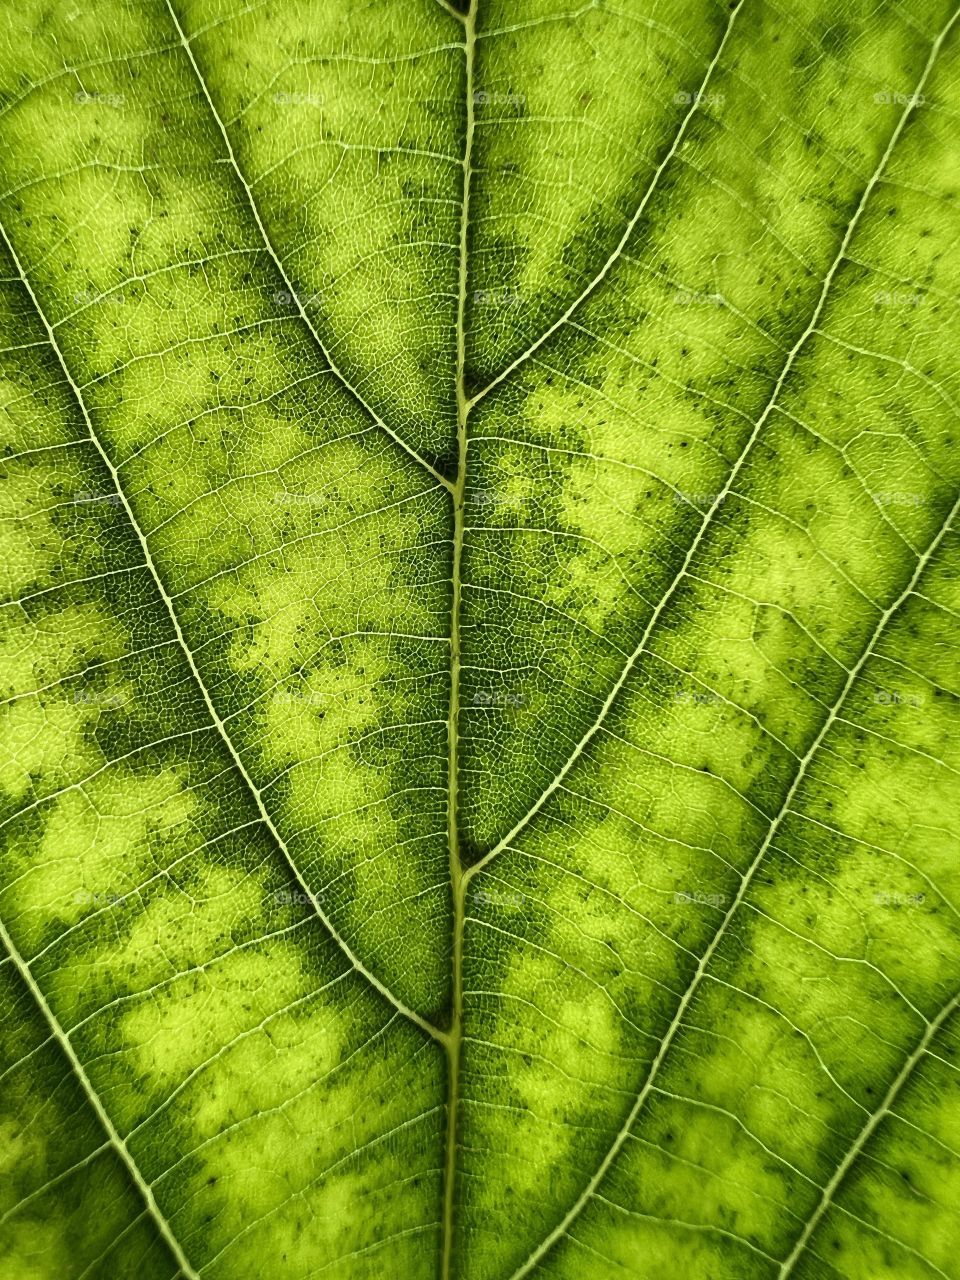 Full frame photo of a green leaf